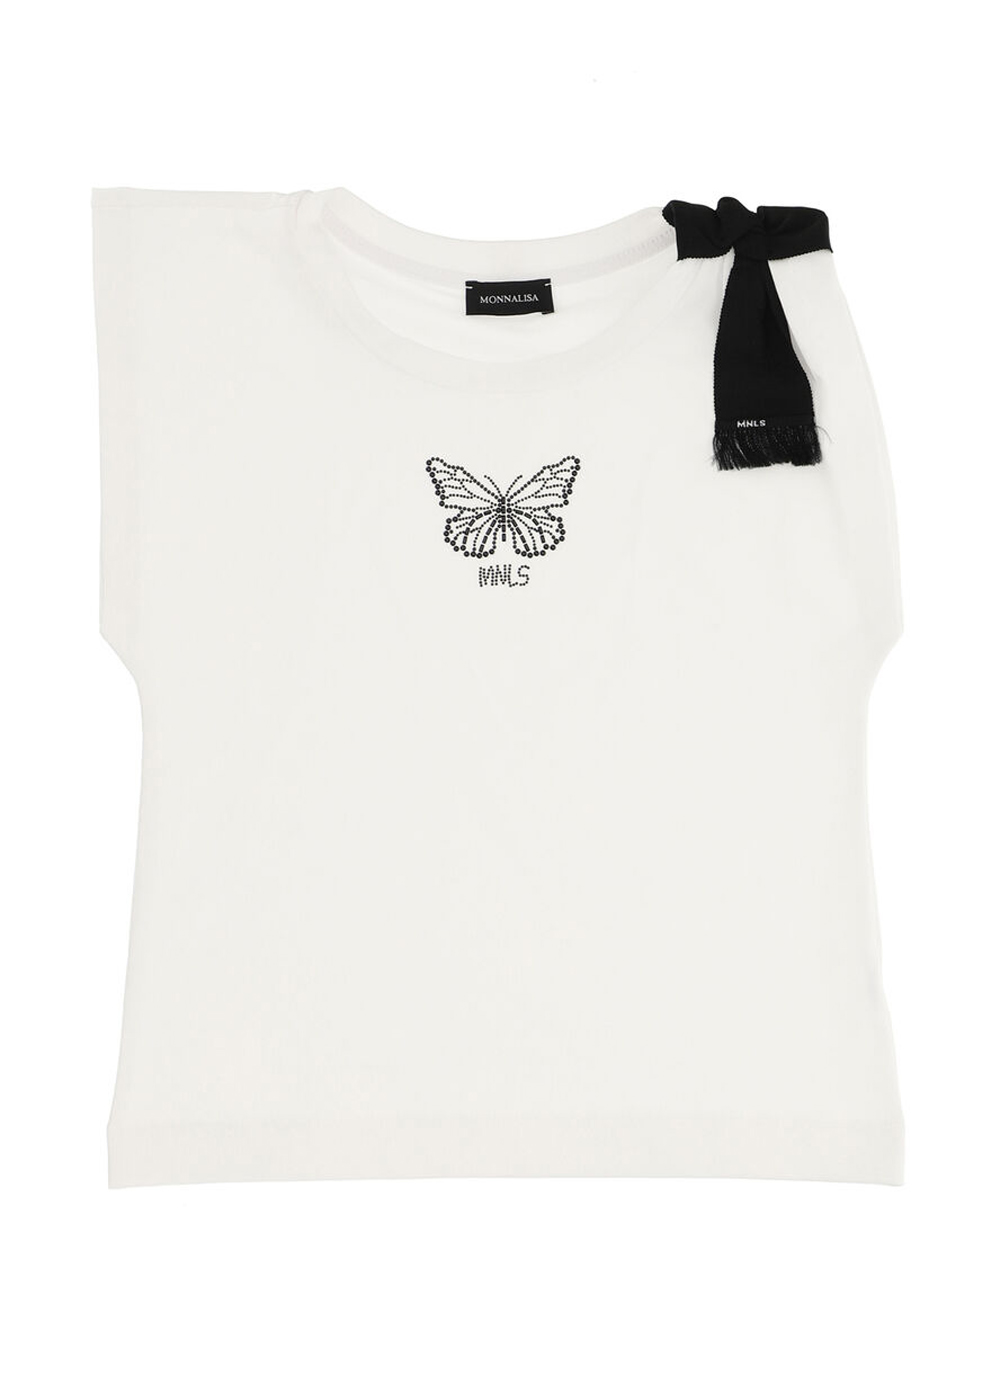 Featured image for “Monnalisa maxi canotta farfalla”